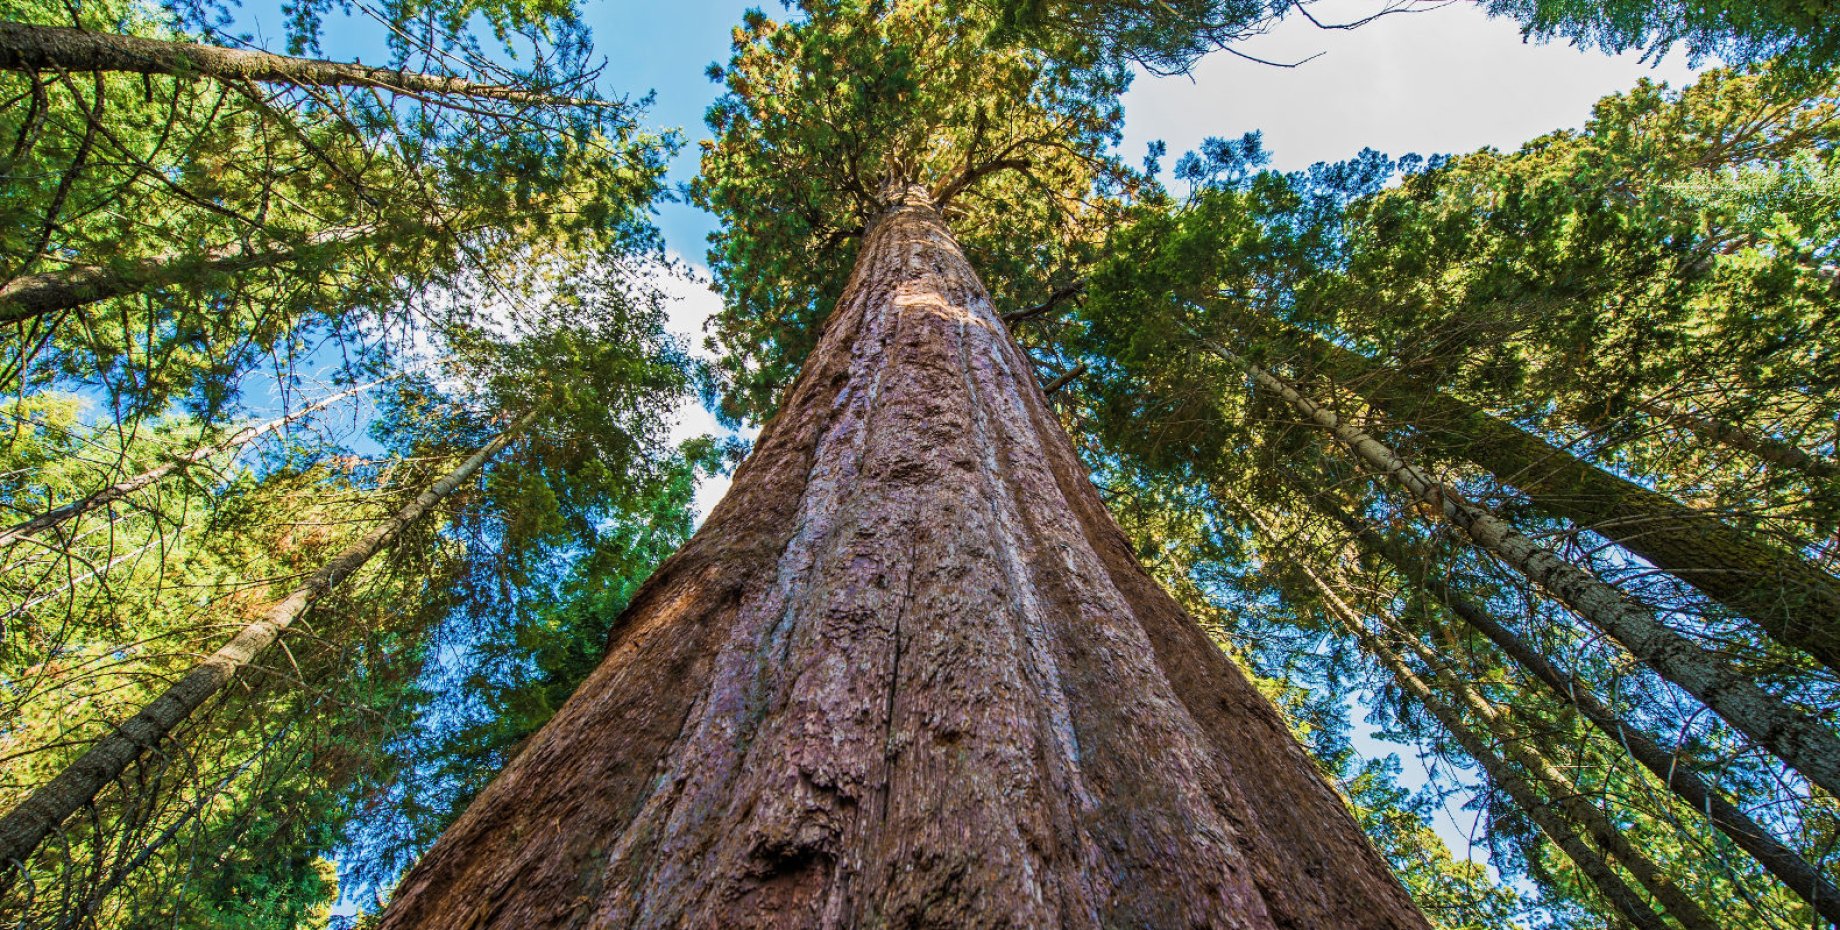 Высокое дерево в мире. Секвойя 115 метров. Самое высокое дерево в мире Секвойя. Самое высокое дерево Секвойя Гиперион. Секвойядендрон гигантский.